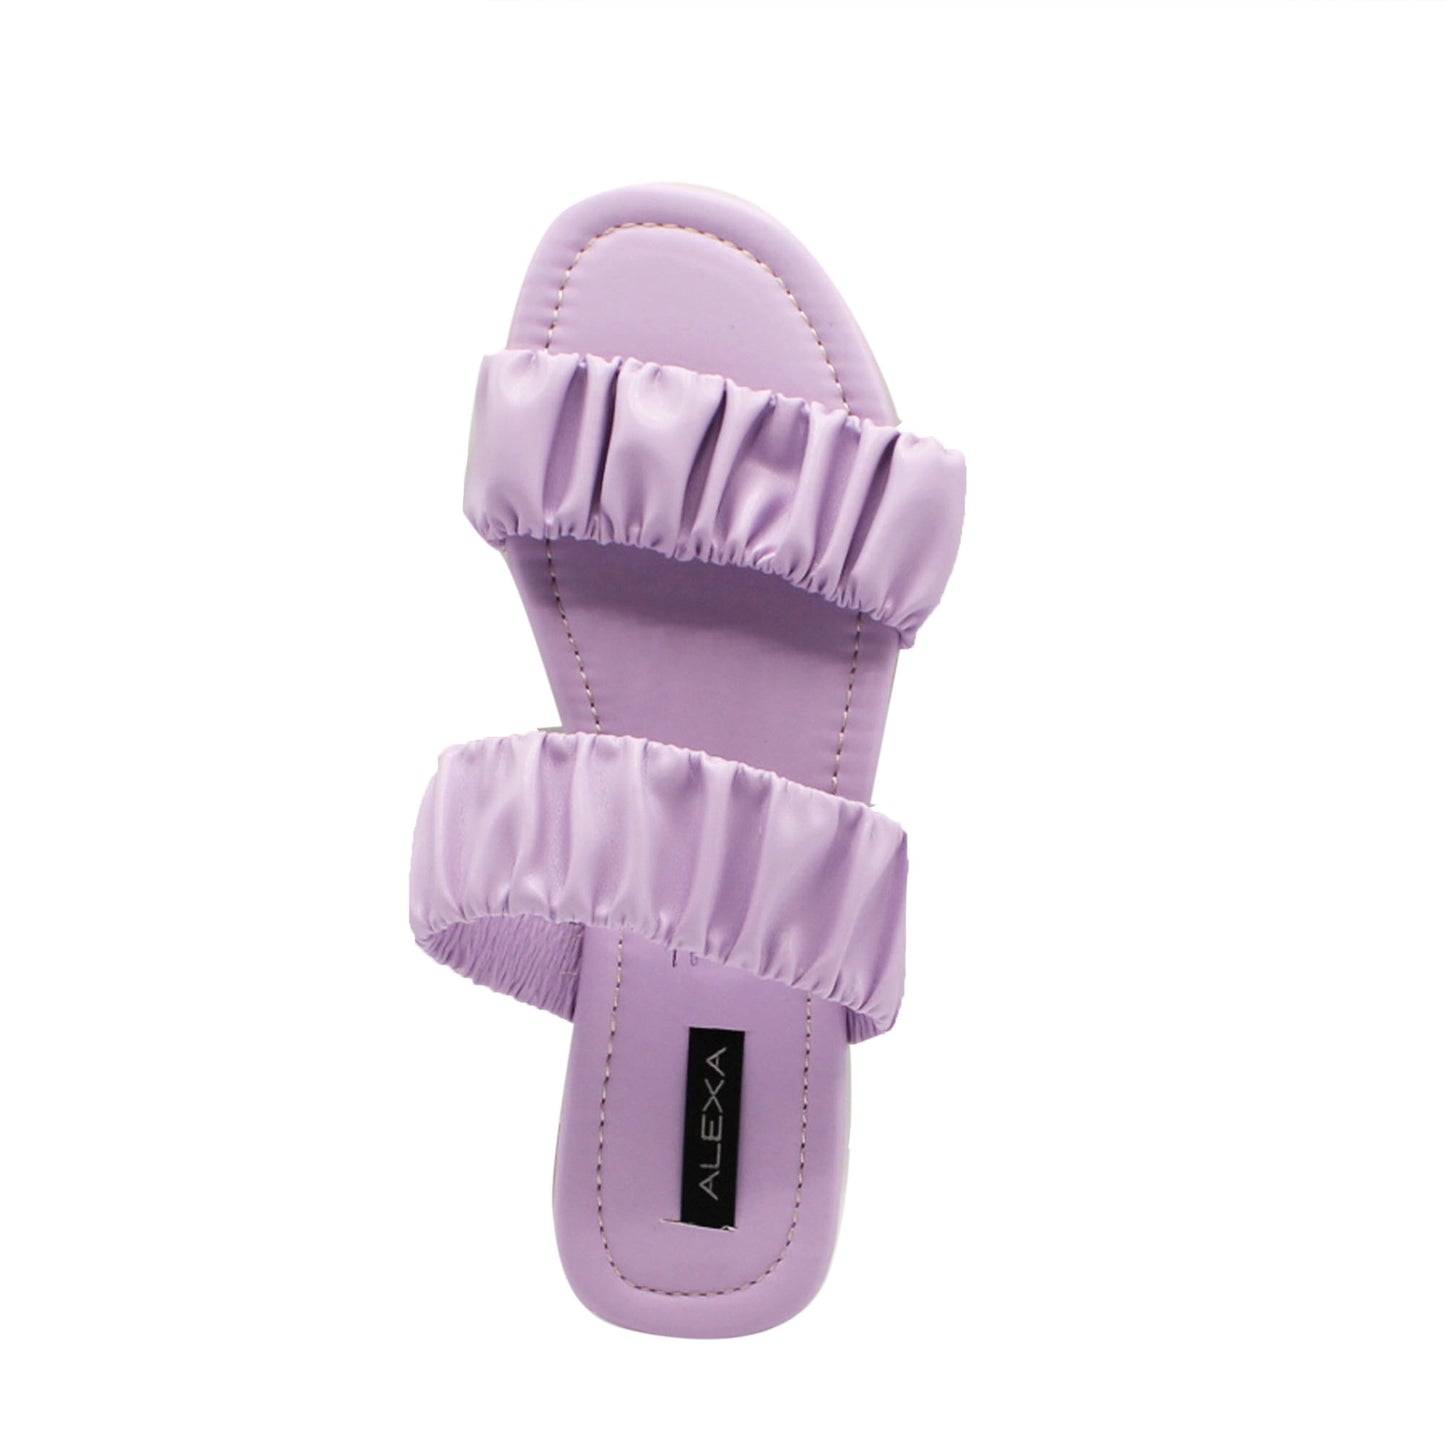 Sandalia de Moda Para Dama | Alexa Modelo 214-01